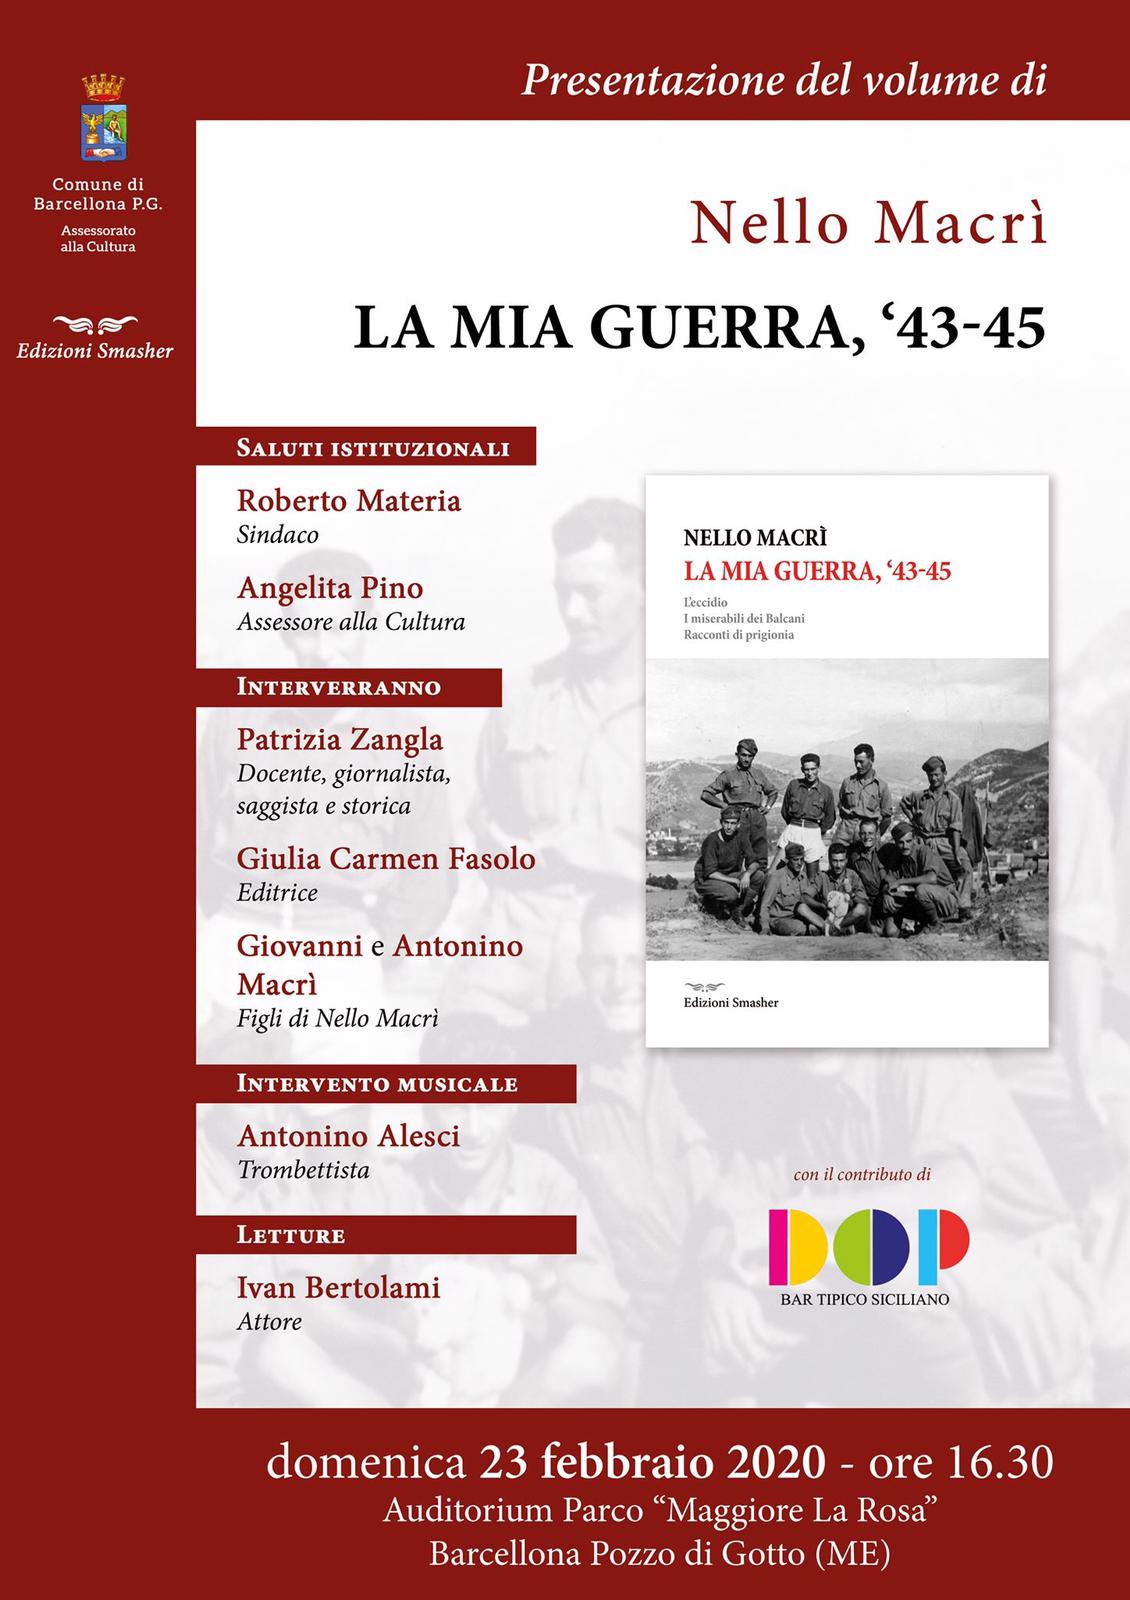 Barcellona PG. La presentazione manoscritto “La mia guerra ‘43-45” del padre del Dott. Giovanni Macrì